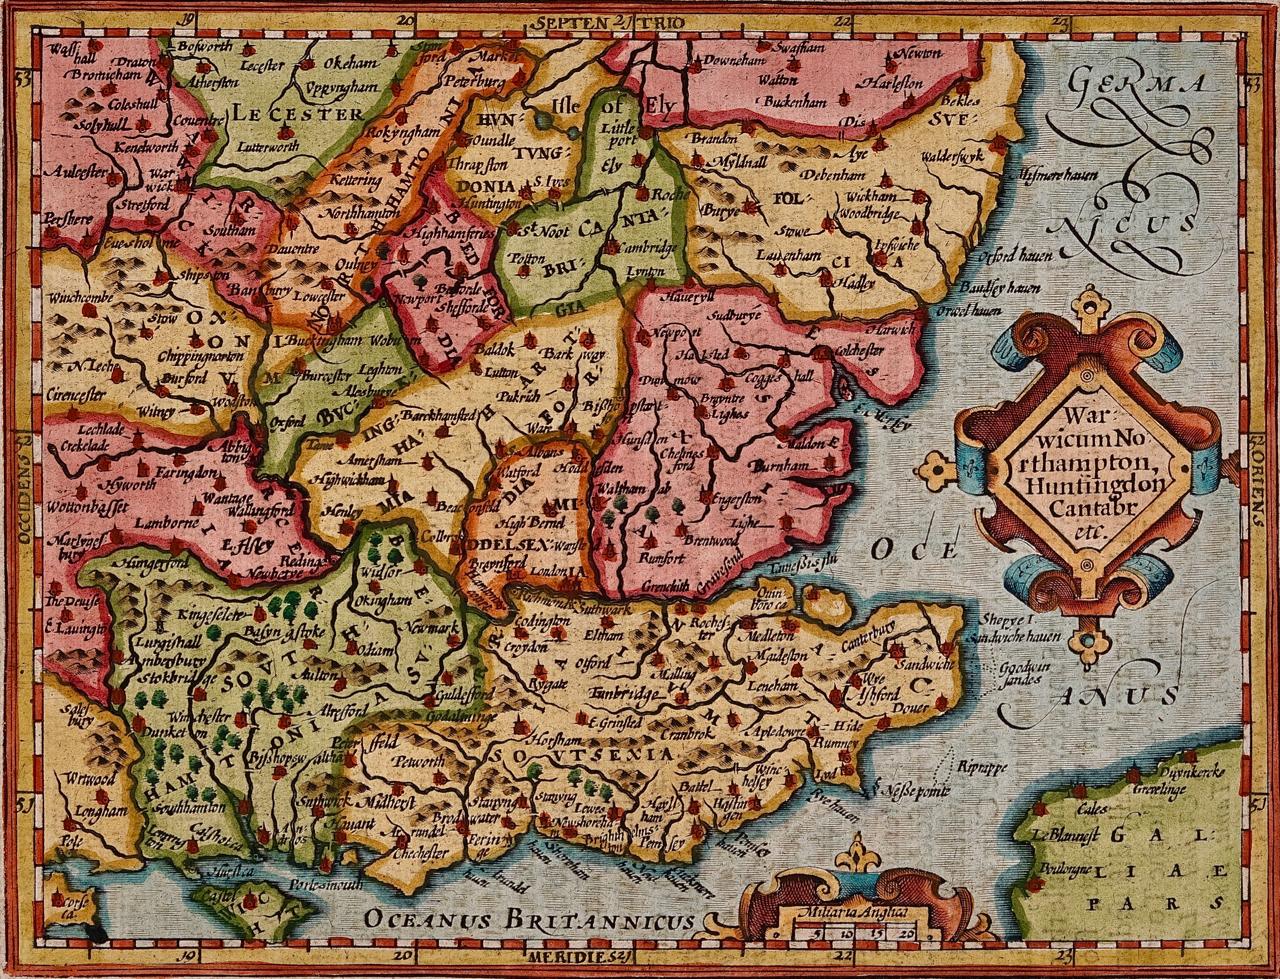 Print Gerard Mercator - Le sud-est de l'Angleterre : une carte colorée à la main du XVIIe siècle par Mercator et Hondius